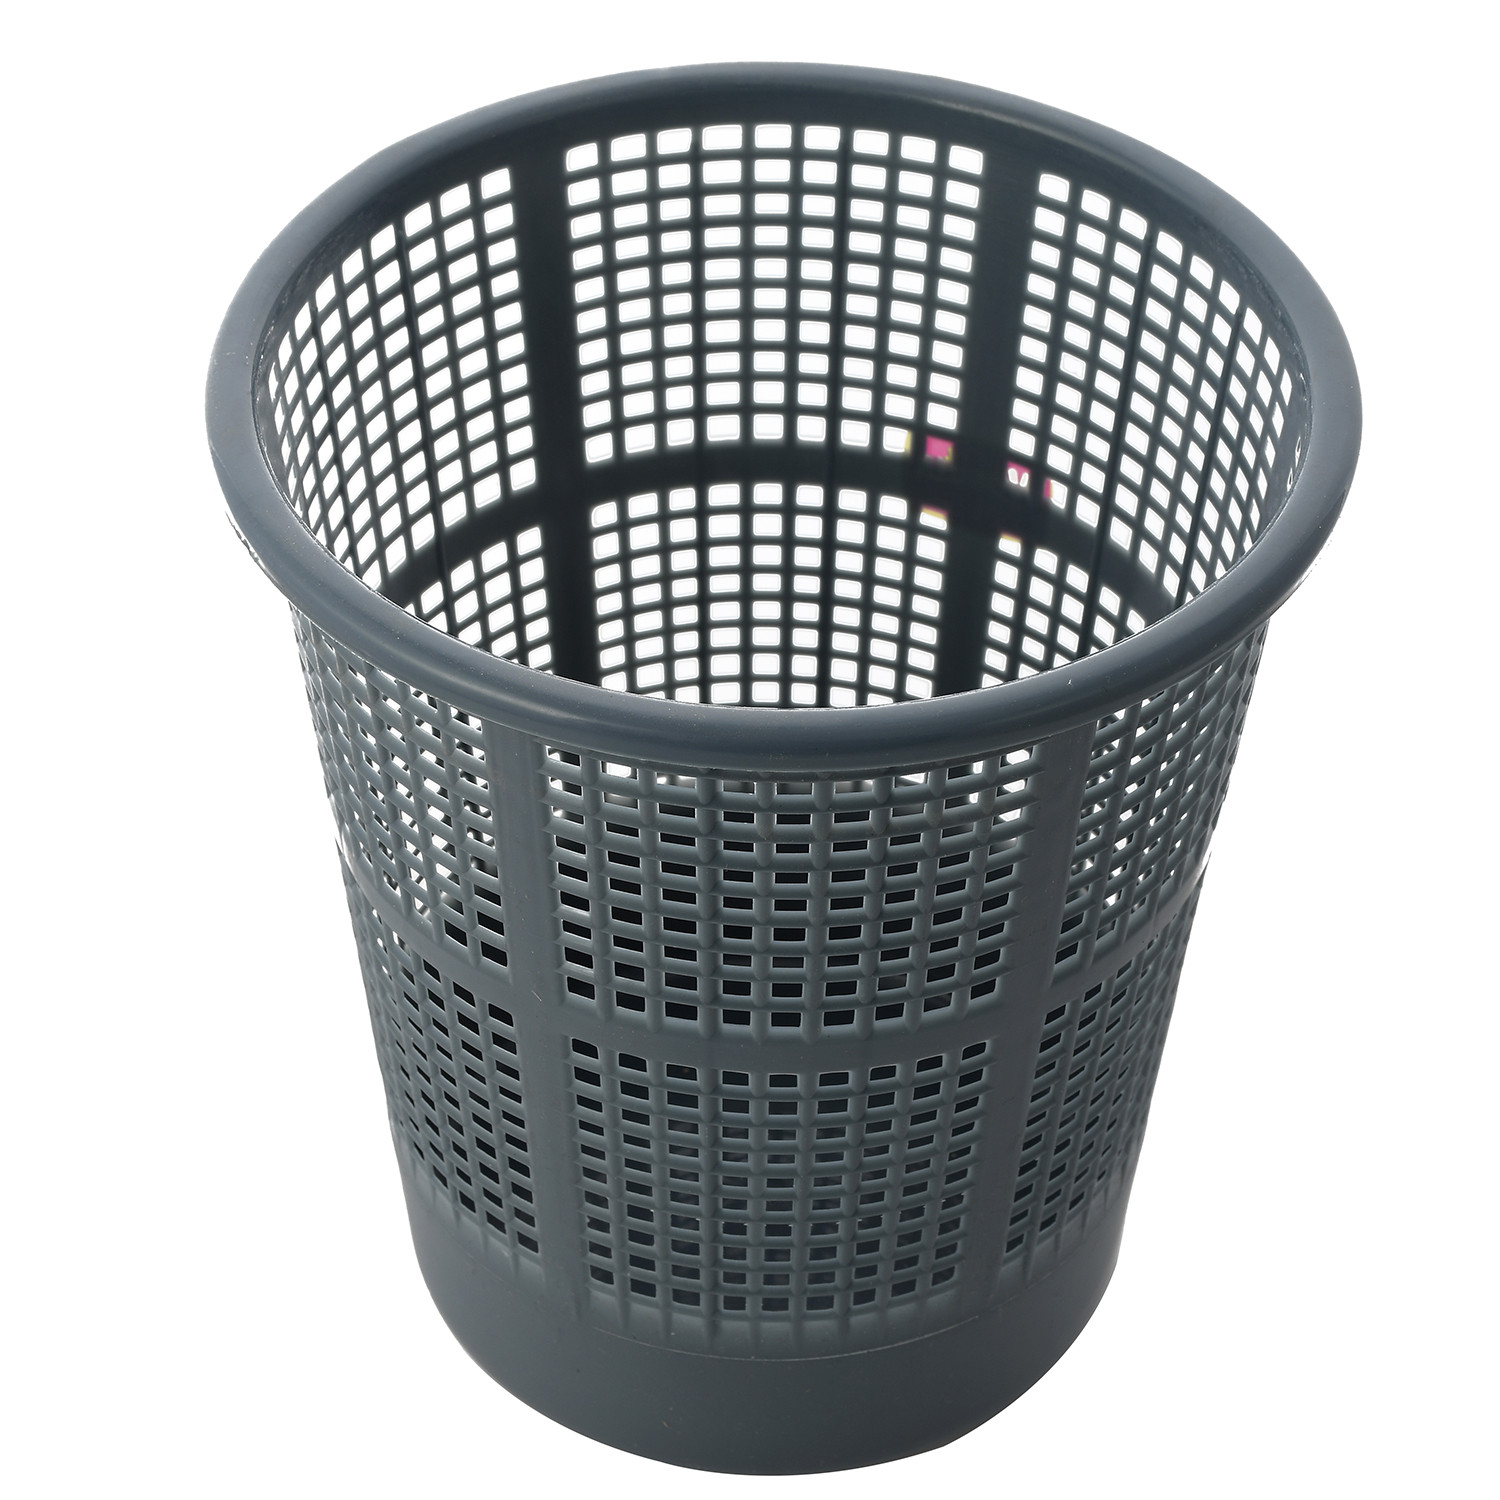 Kuber Industries Plastic Mesh Dustbin Garbage Bin for Office use, School, Bedroom,Kids Room, Home, Multi Purpose,5 Liters (Grey)